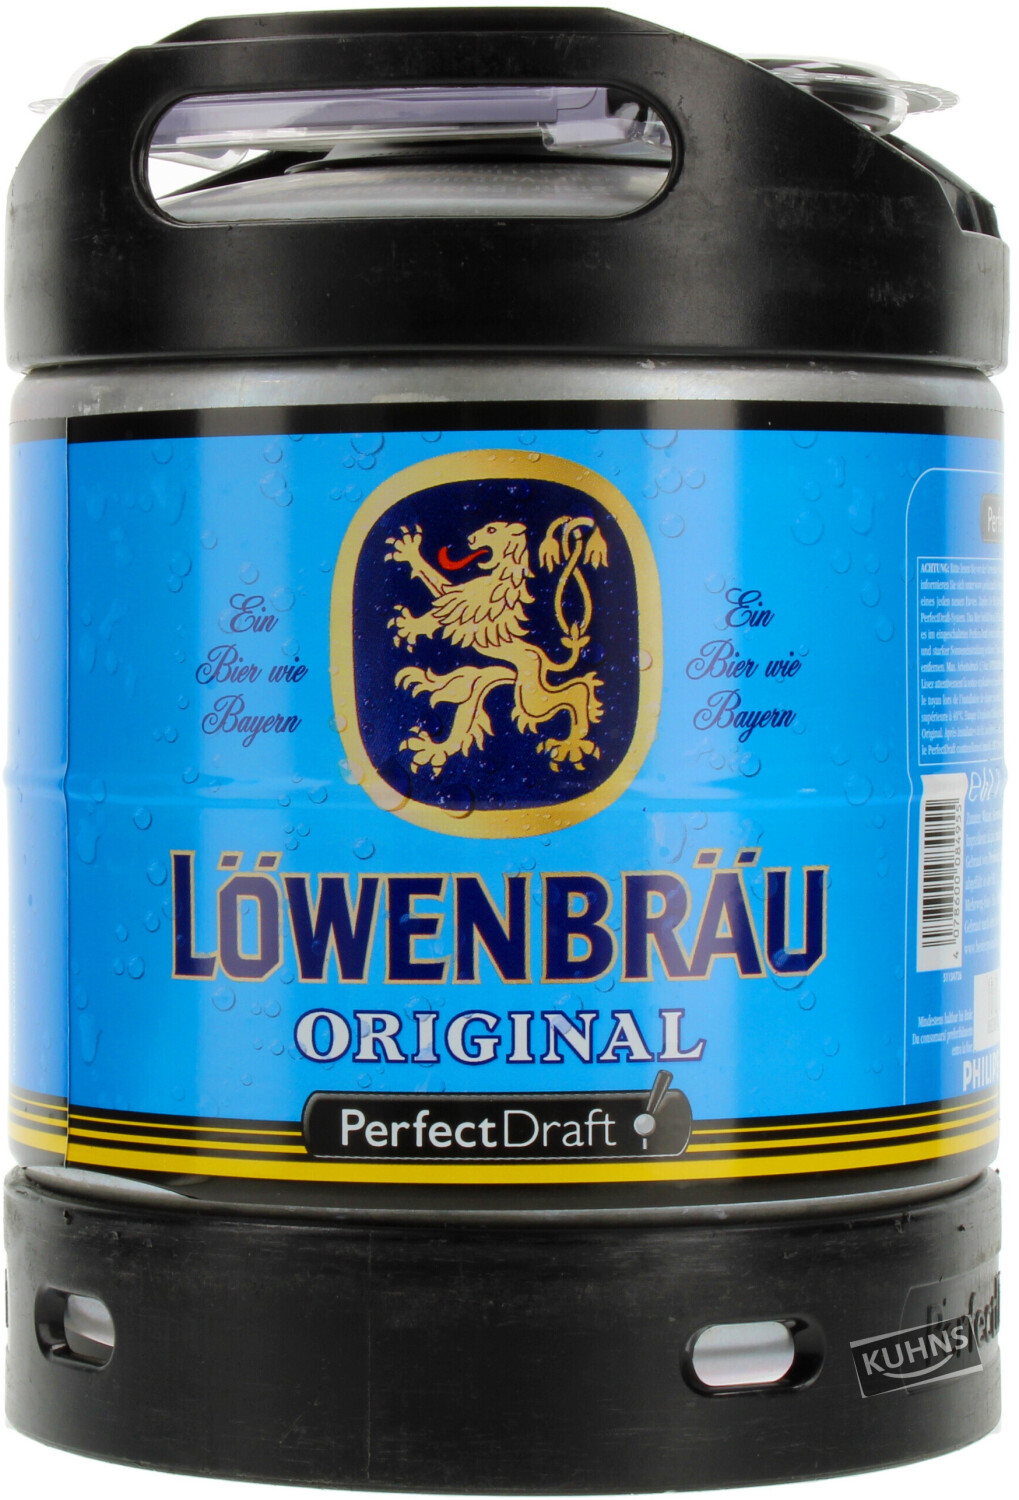 LOWENBRAU PERFECT DRAFT 6L 5.2% - Boutique de Nancy Sud - Mille et